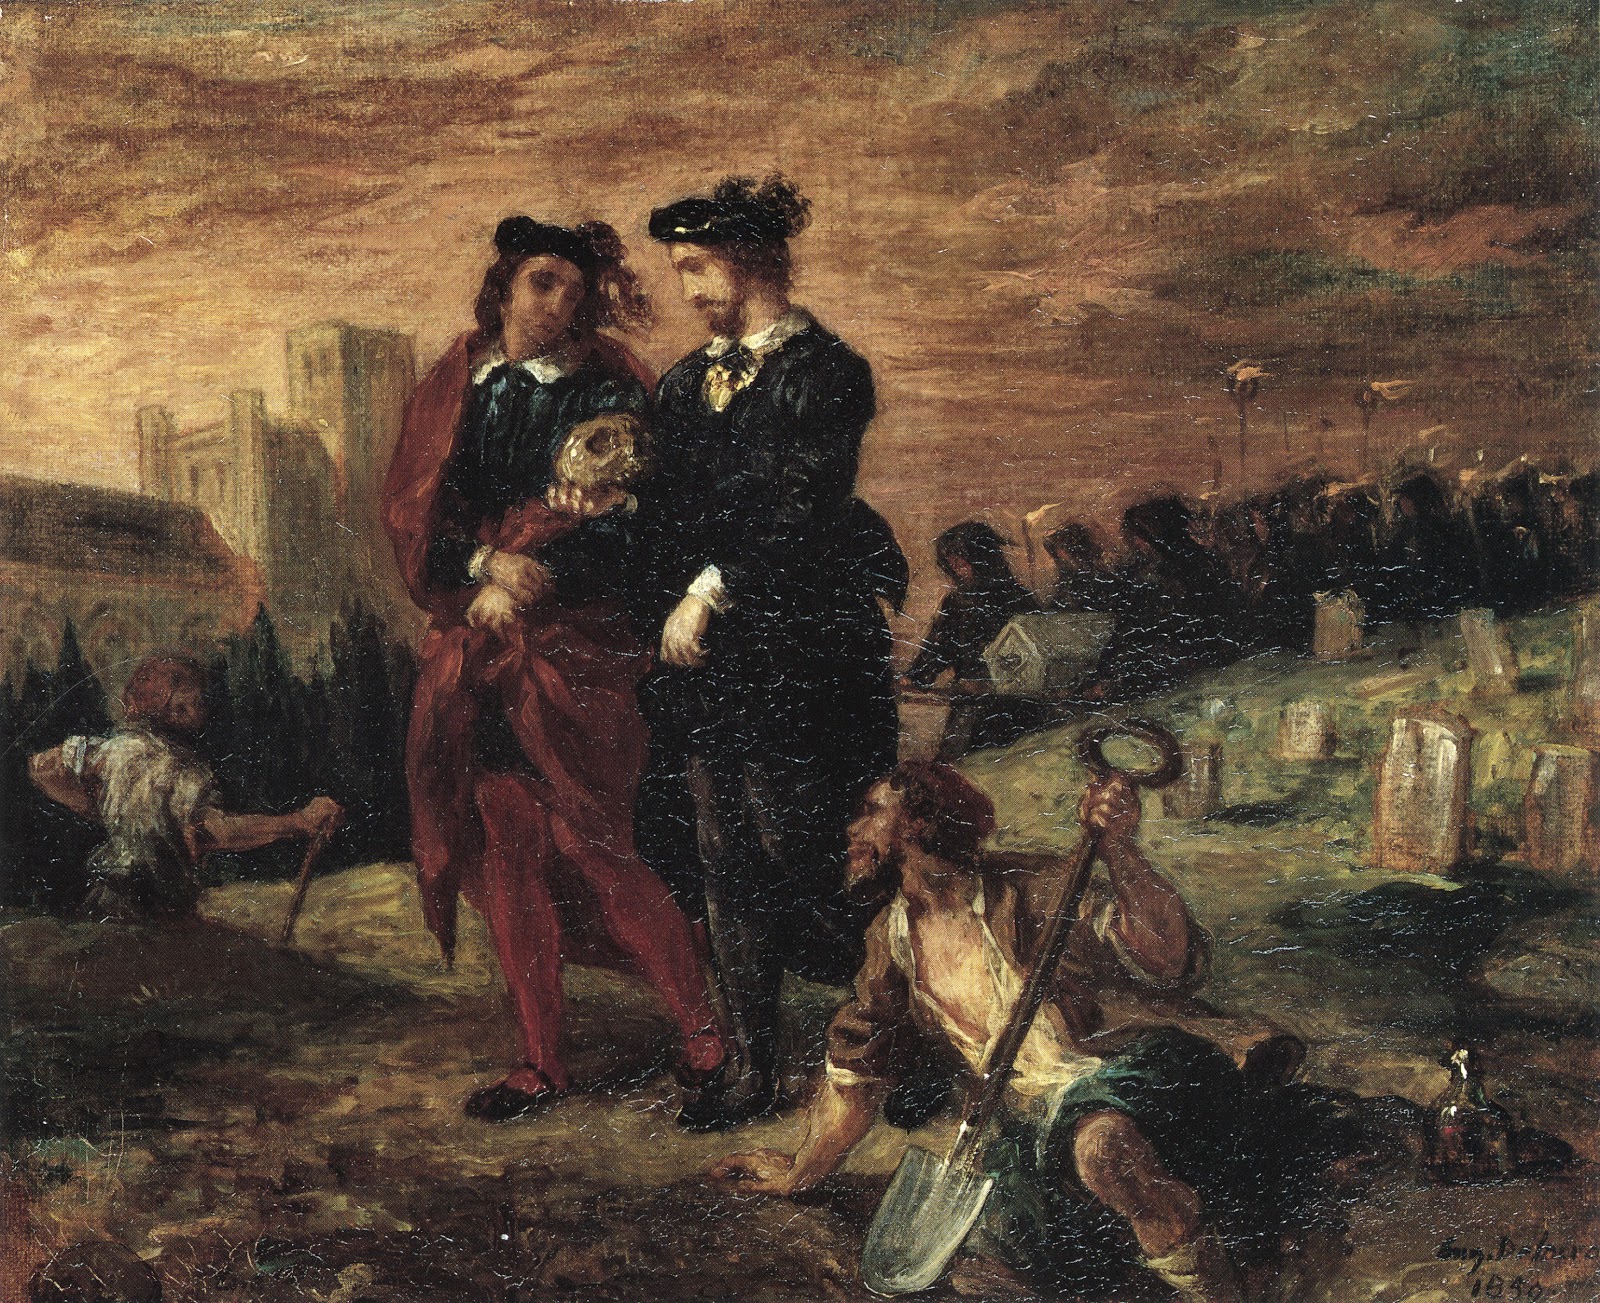 Eugene+Delacroix-1798-1863 (127).jpg